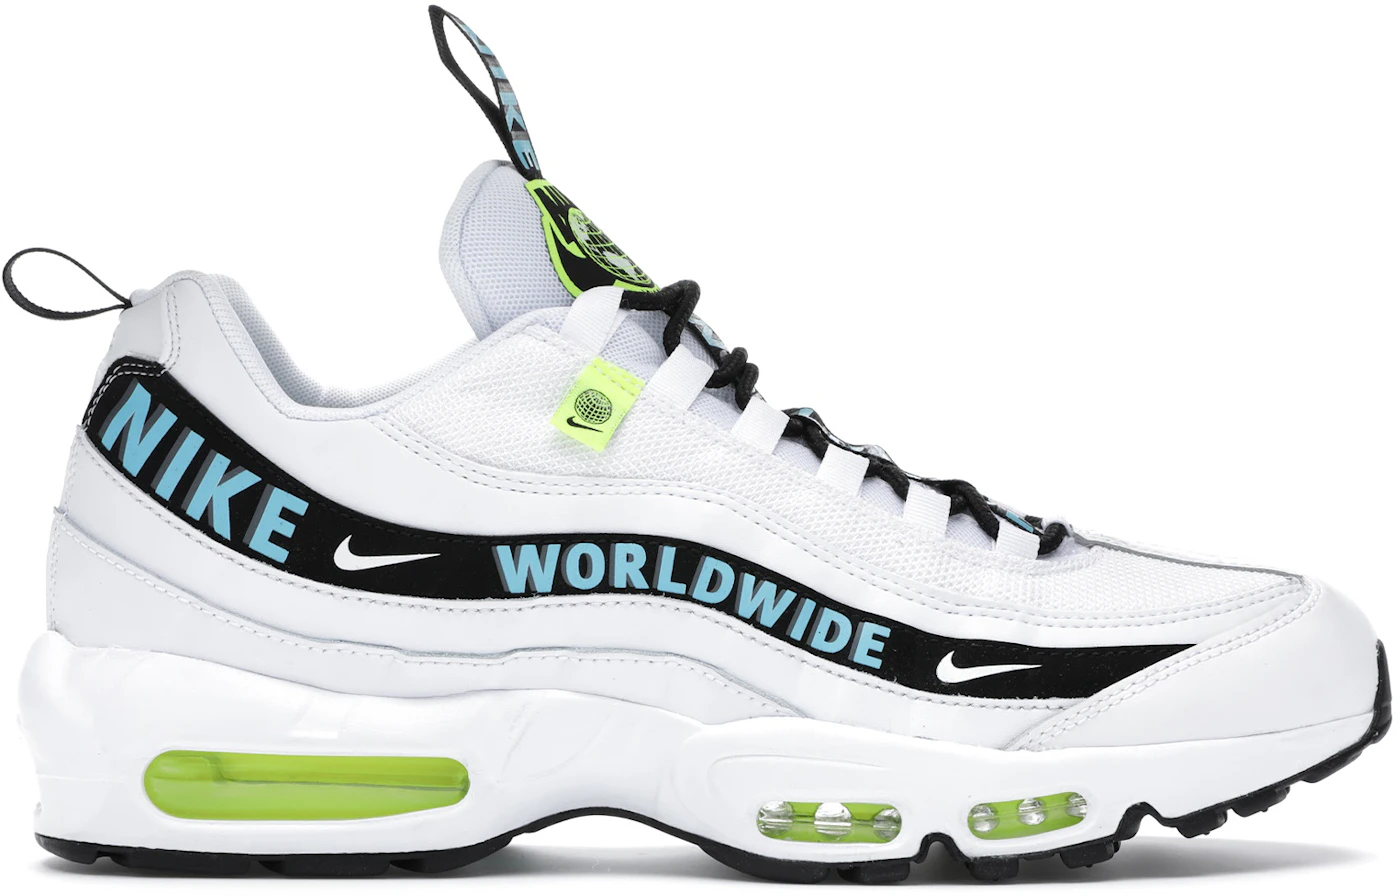 Waakzaamheid een vergoeding jeugd Nike Air Max 95 Worldwide Pack White - CT0248-100 - US